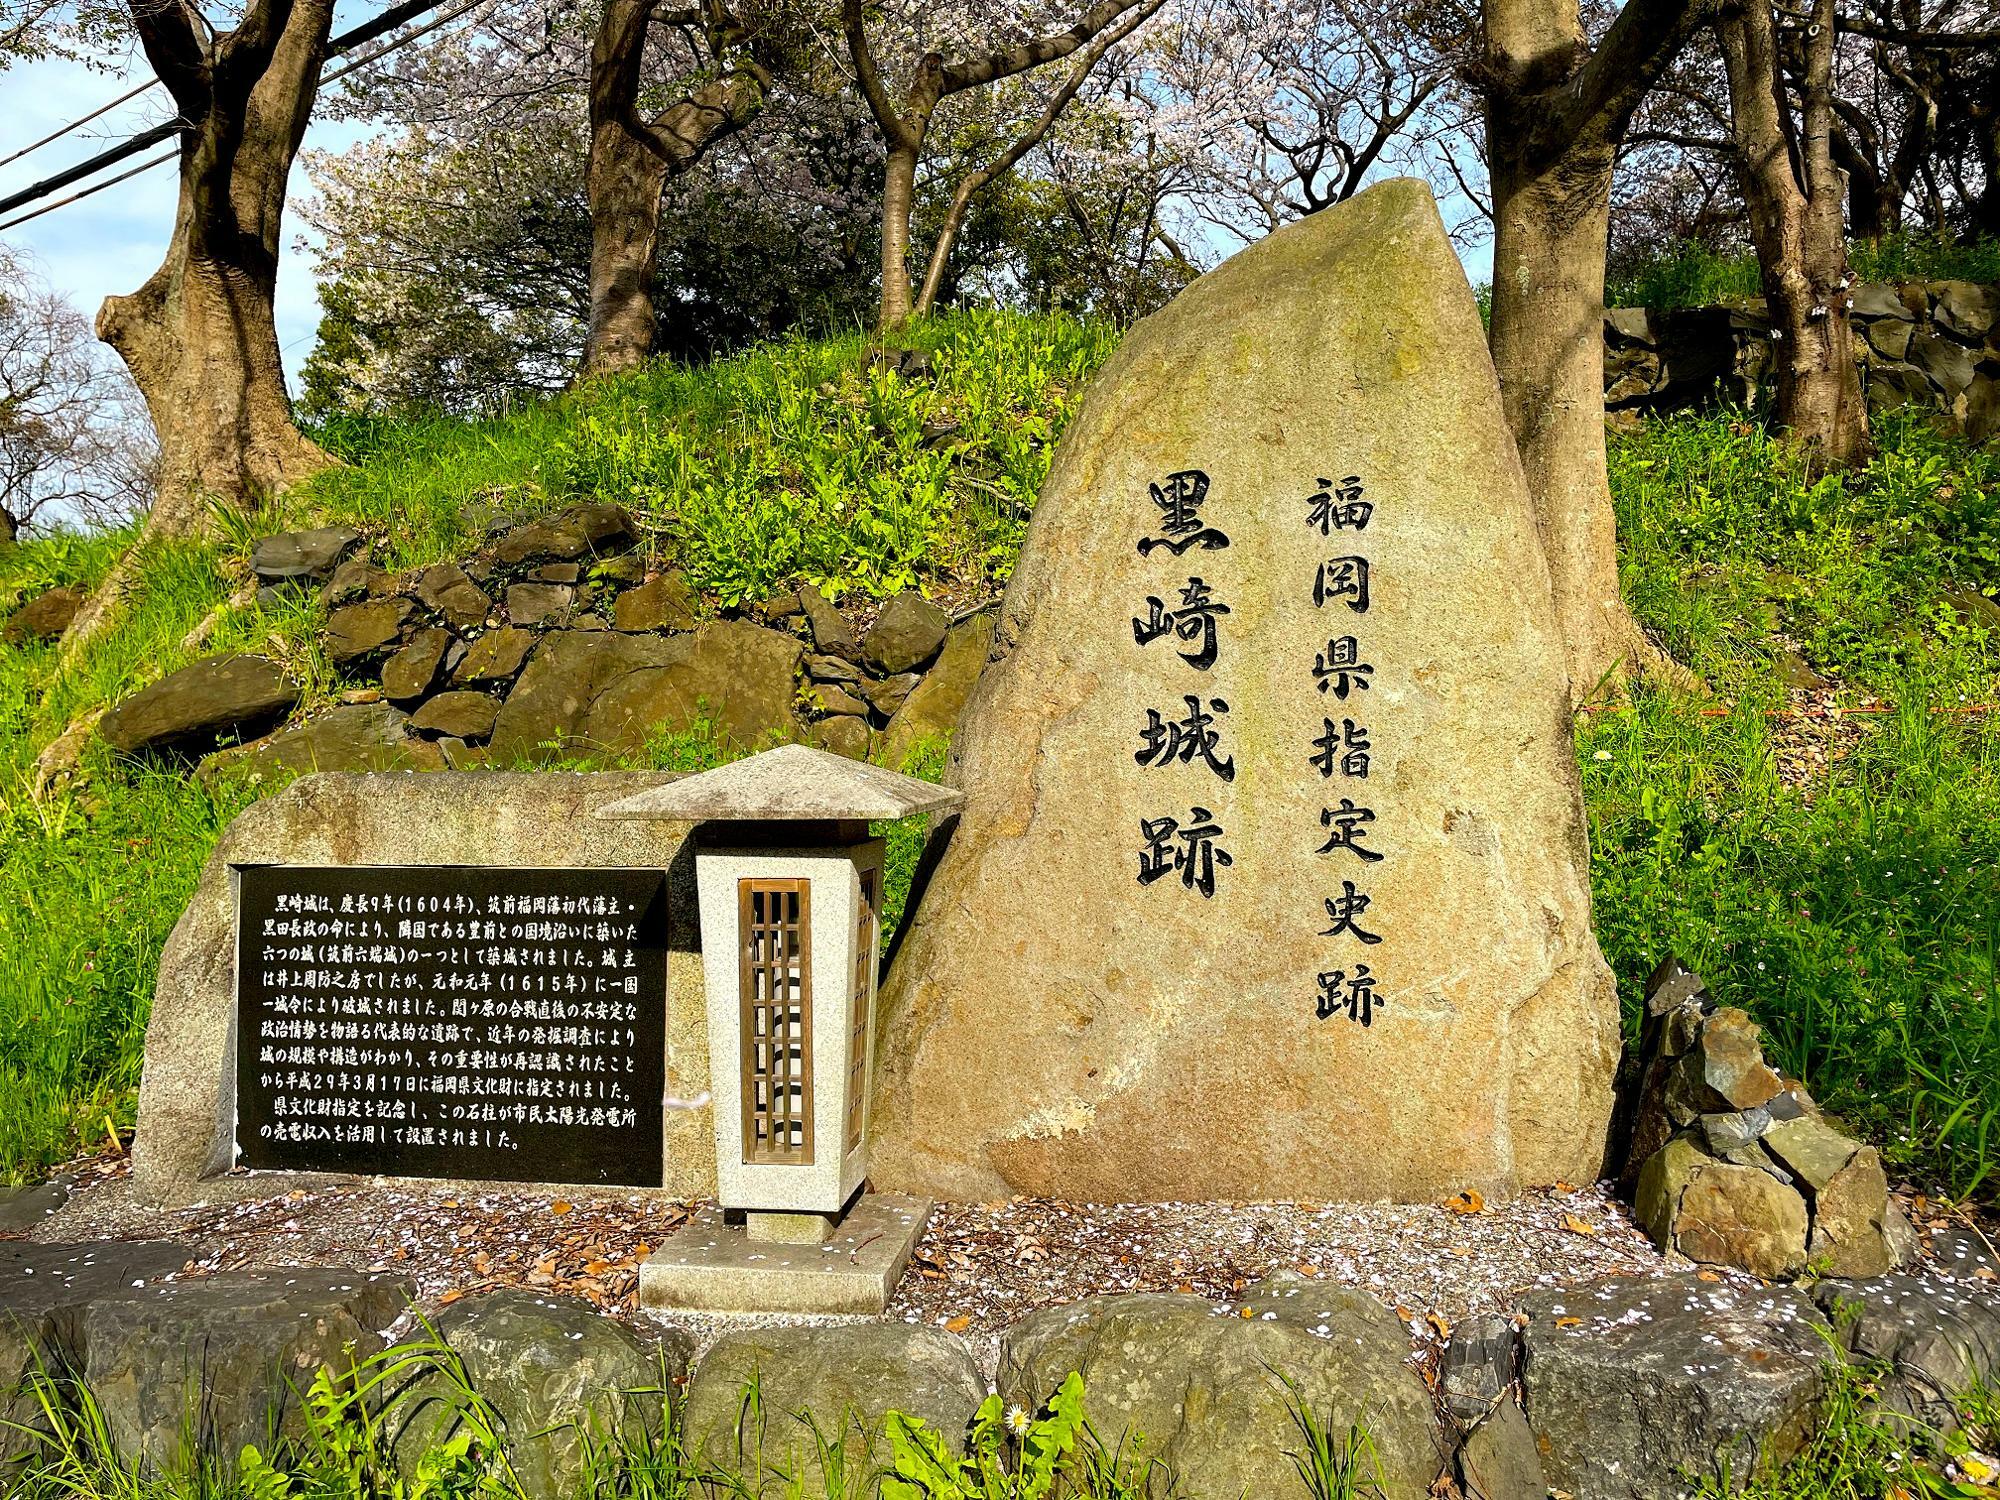 石垣が発掘されて黒崎城の構造や規模がわかる貴重な資料に。県指定史跡の石碑がありました。